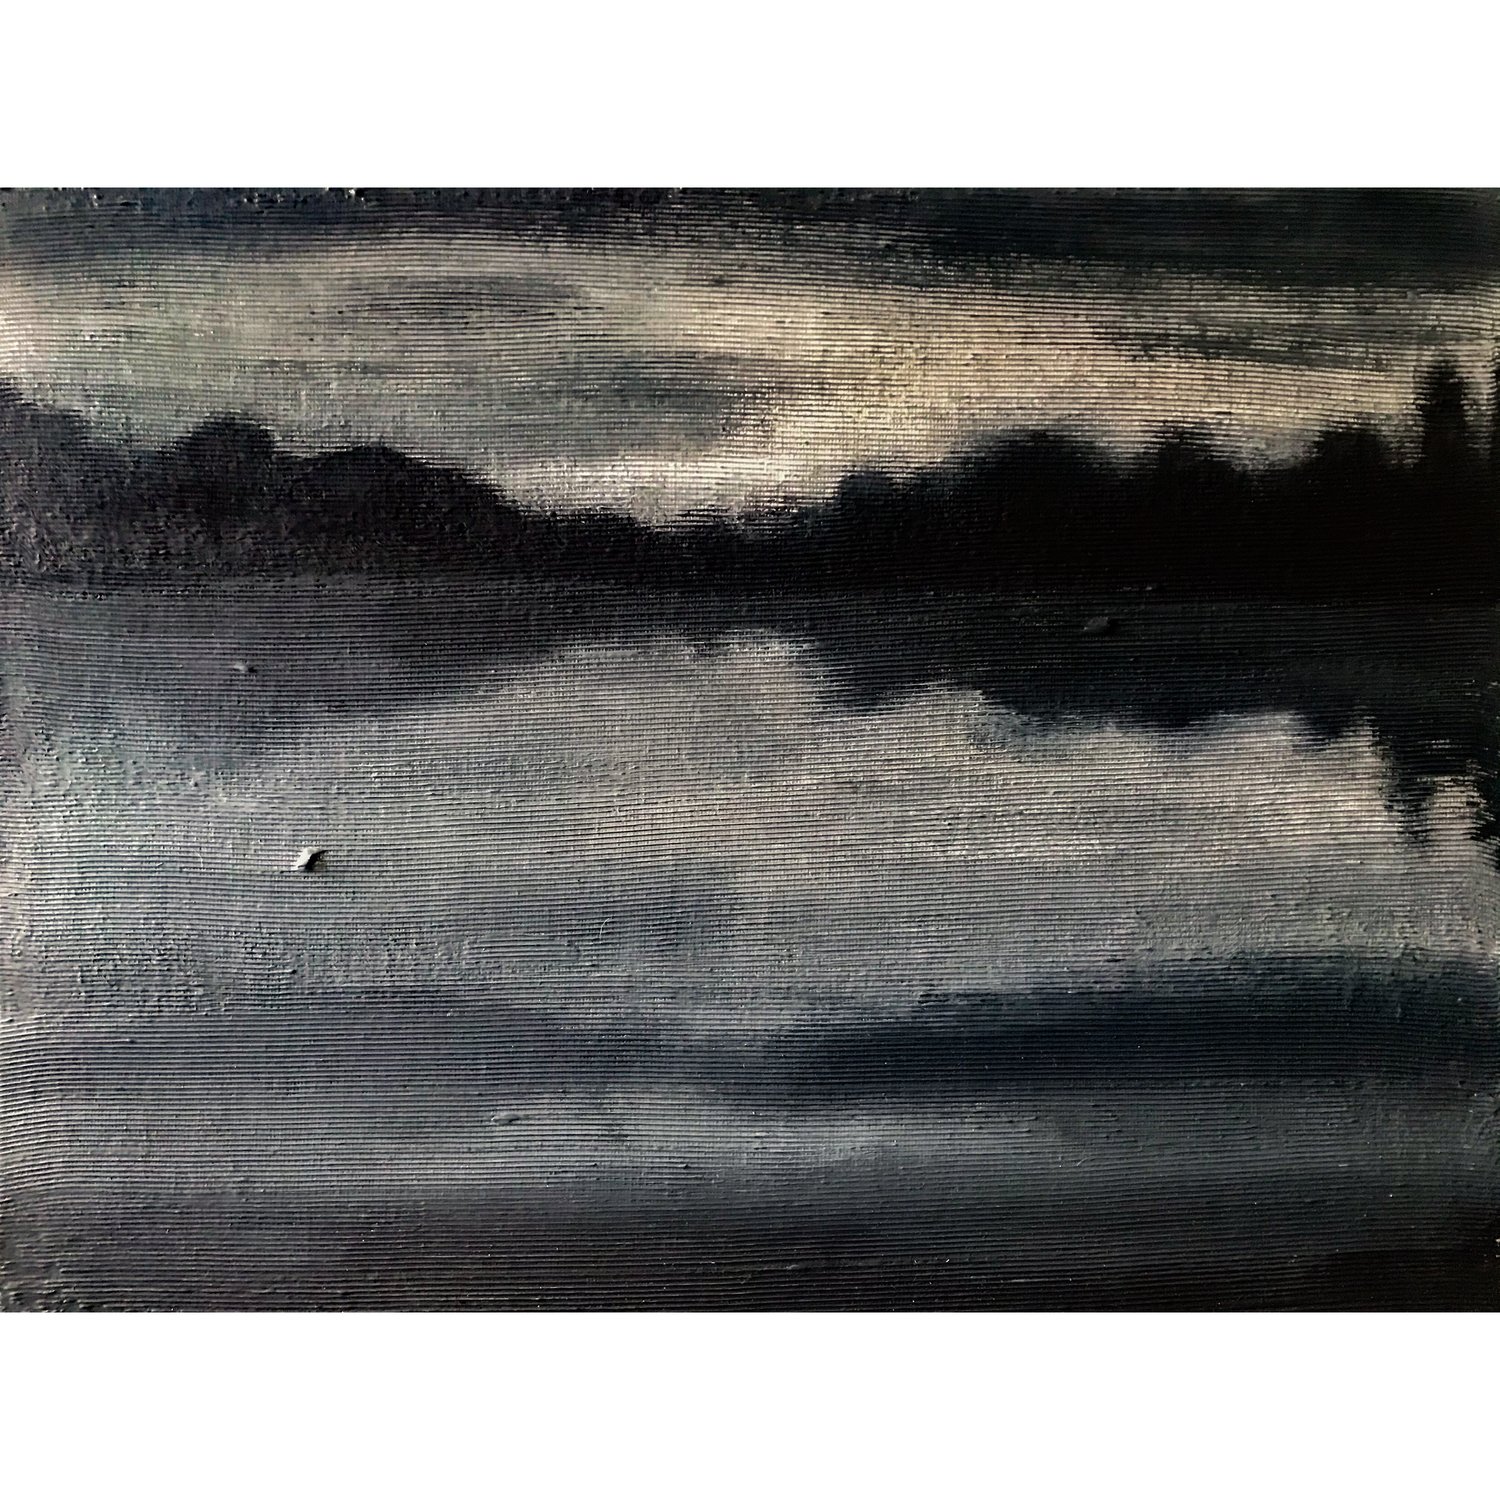 MONOCHROME Summer Dawn - acrylic on canvas board 30x40 cm